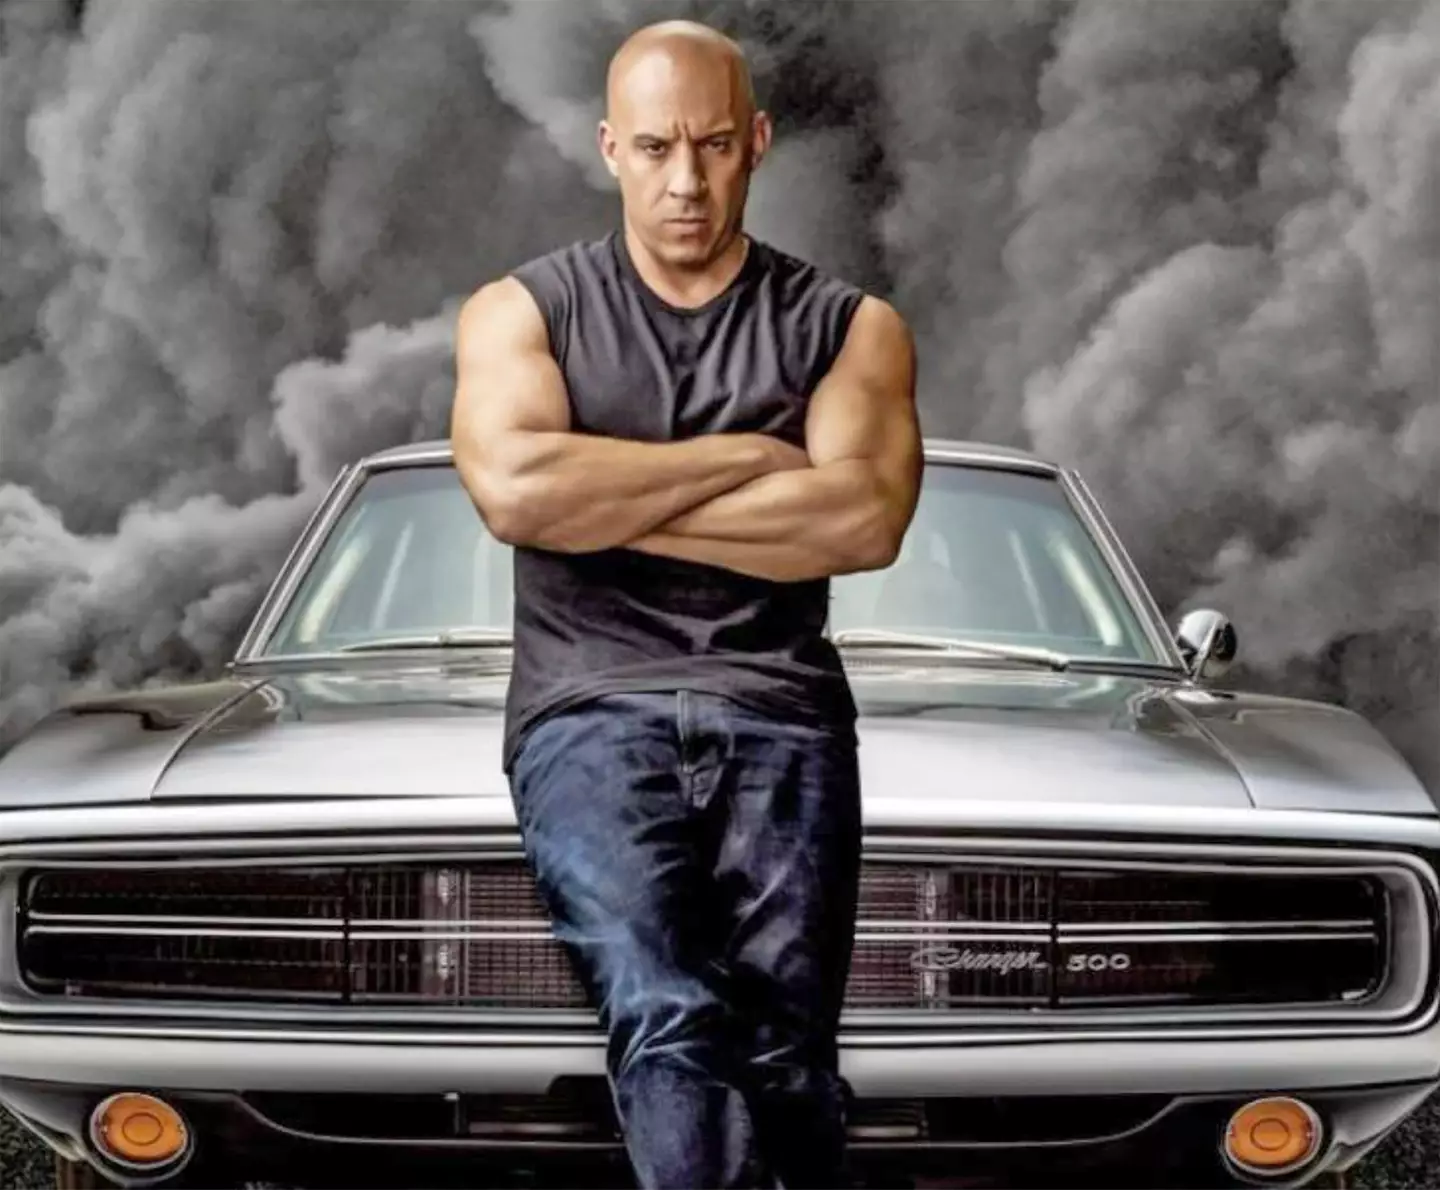 The hit franchise stars Vin Diesel